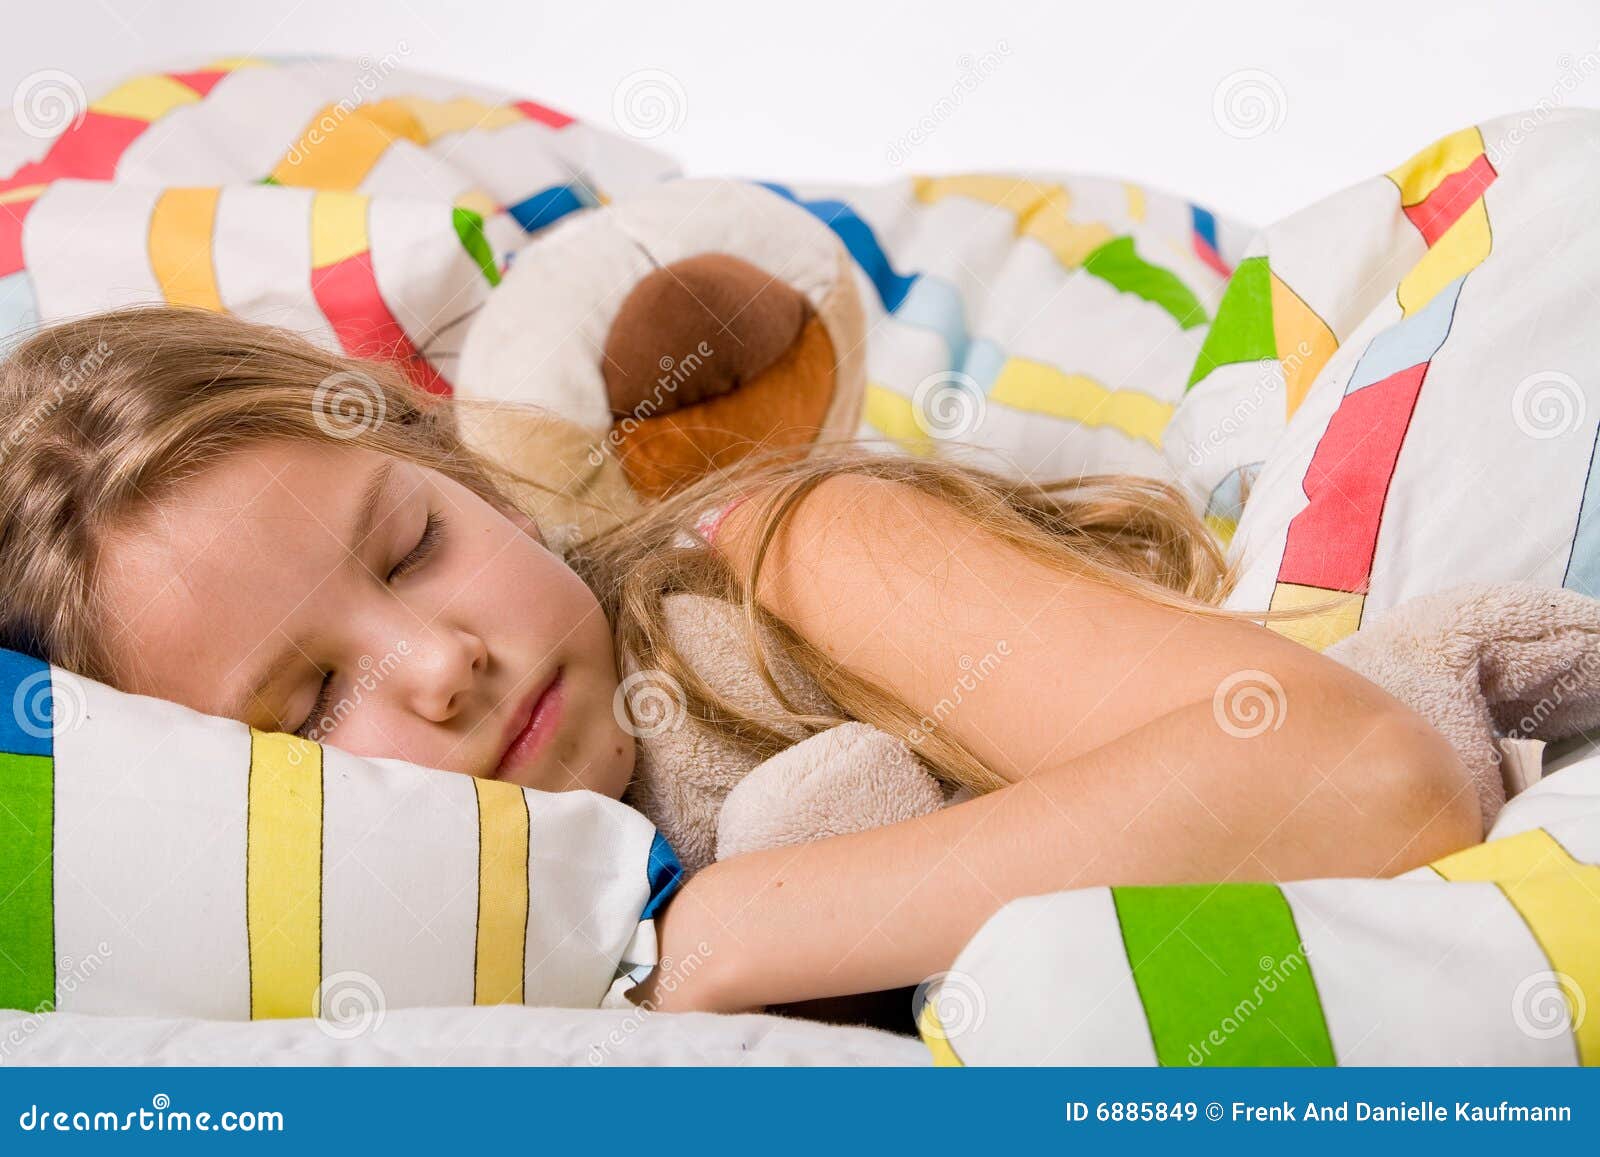 Bambino addormentato sveglio. Giovane bambino sveglio addormentato in una base variopinta